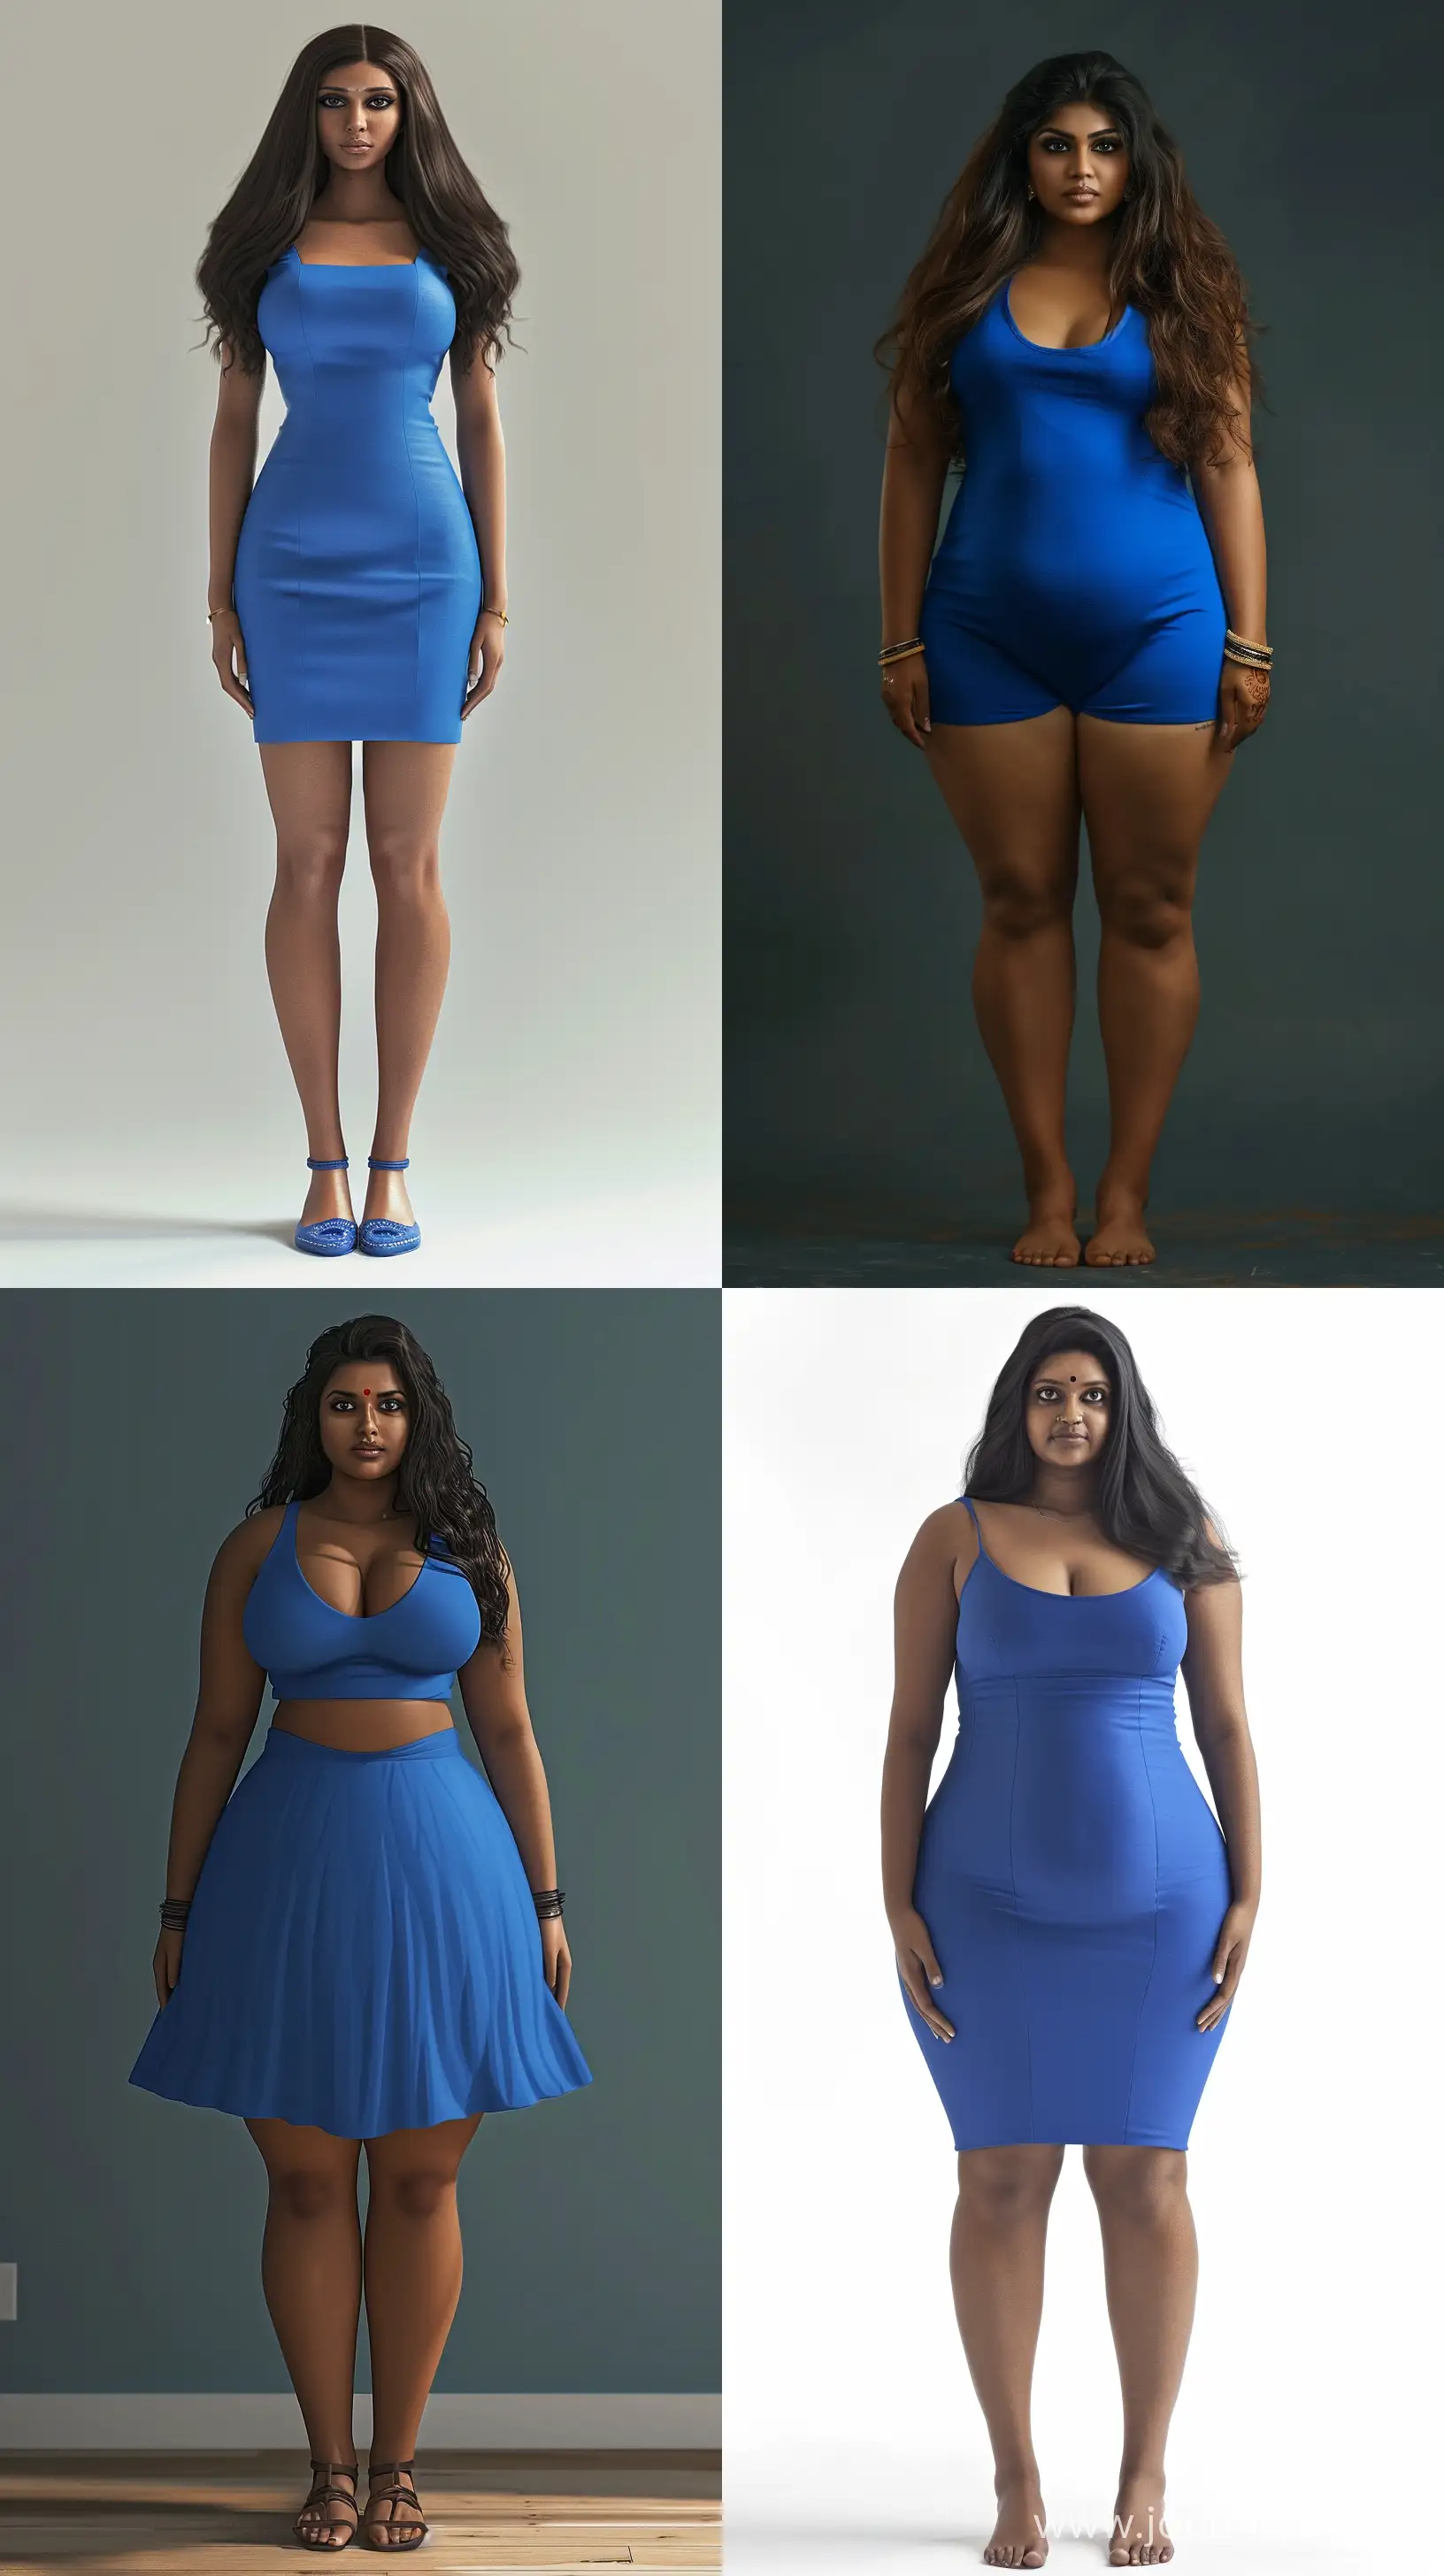 Tall-Curvy-Tamil-Indian-Woman-in-Elegant-Blue-Dress